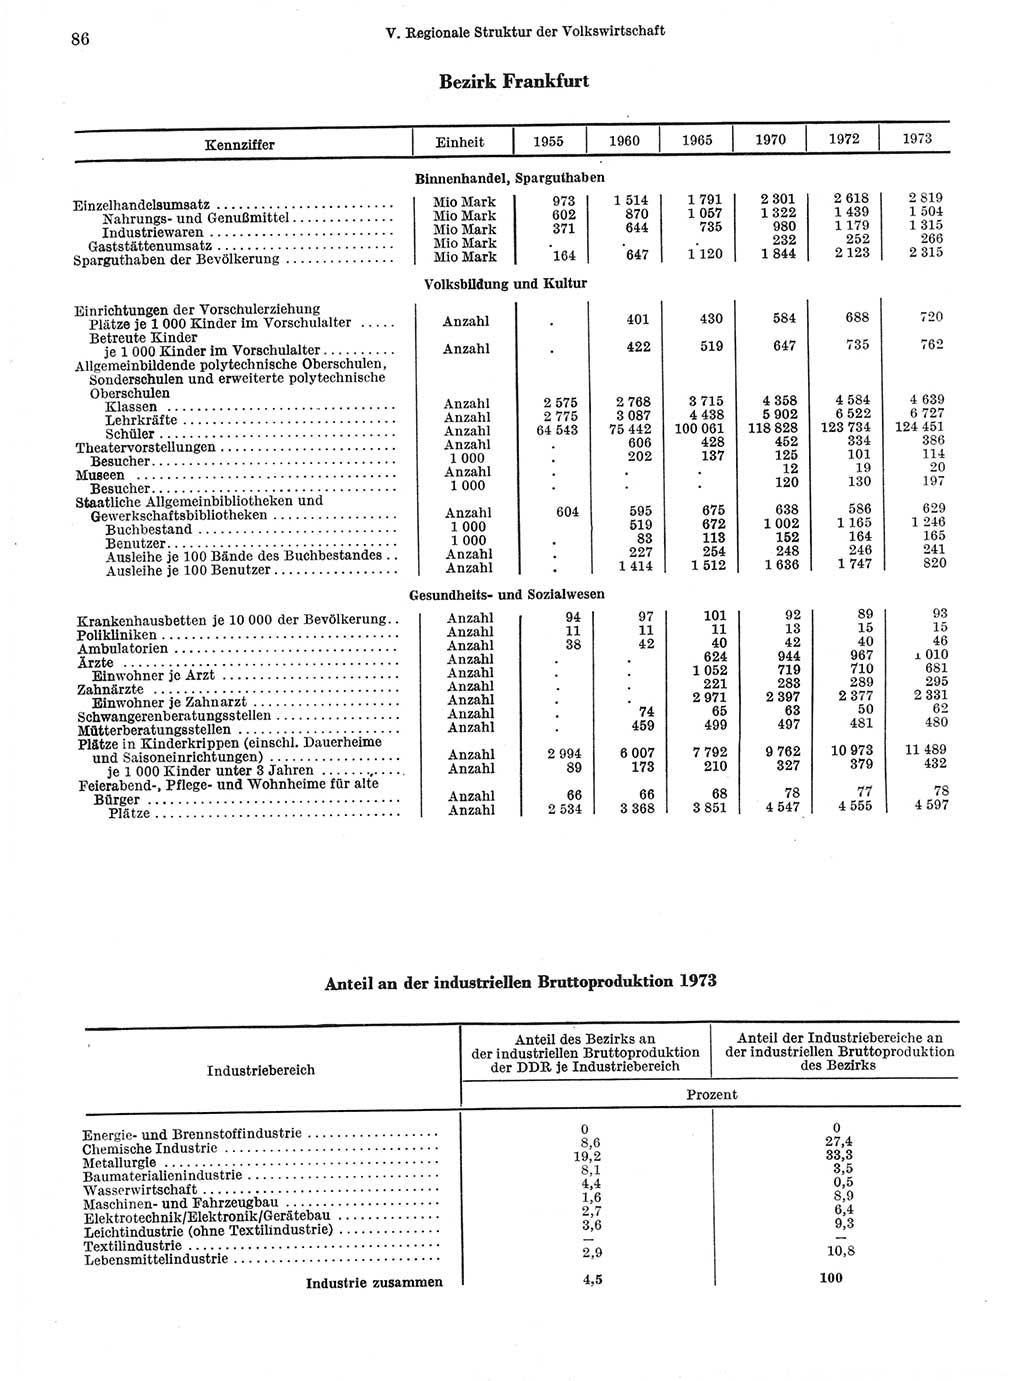 Statistisches Jahrbuch der Deutschen Demokratischen Republik (DDR) 1974, Seite 86 (Stat. Jb. DDR 1974, S. 86)